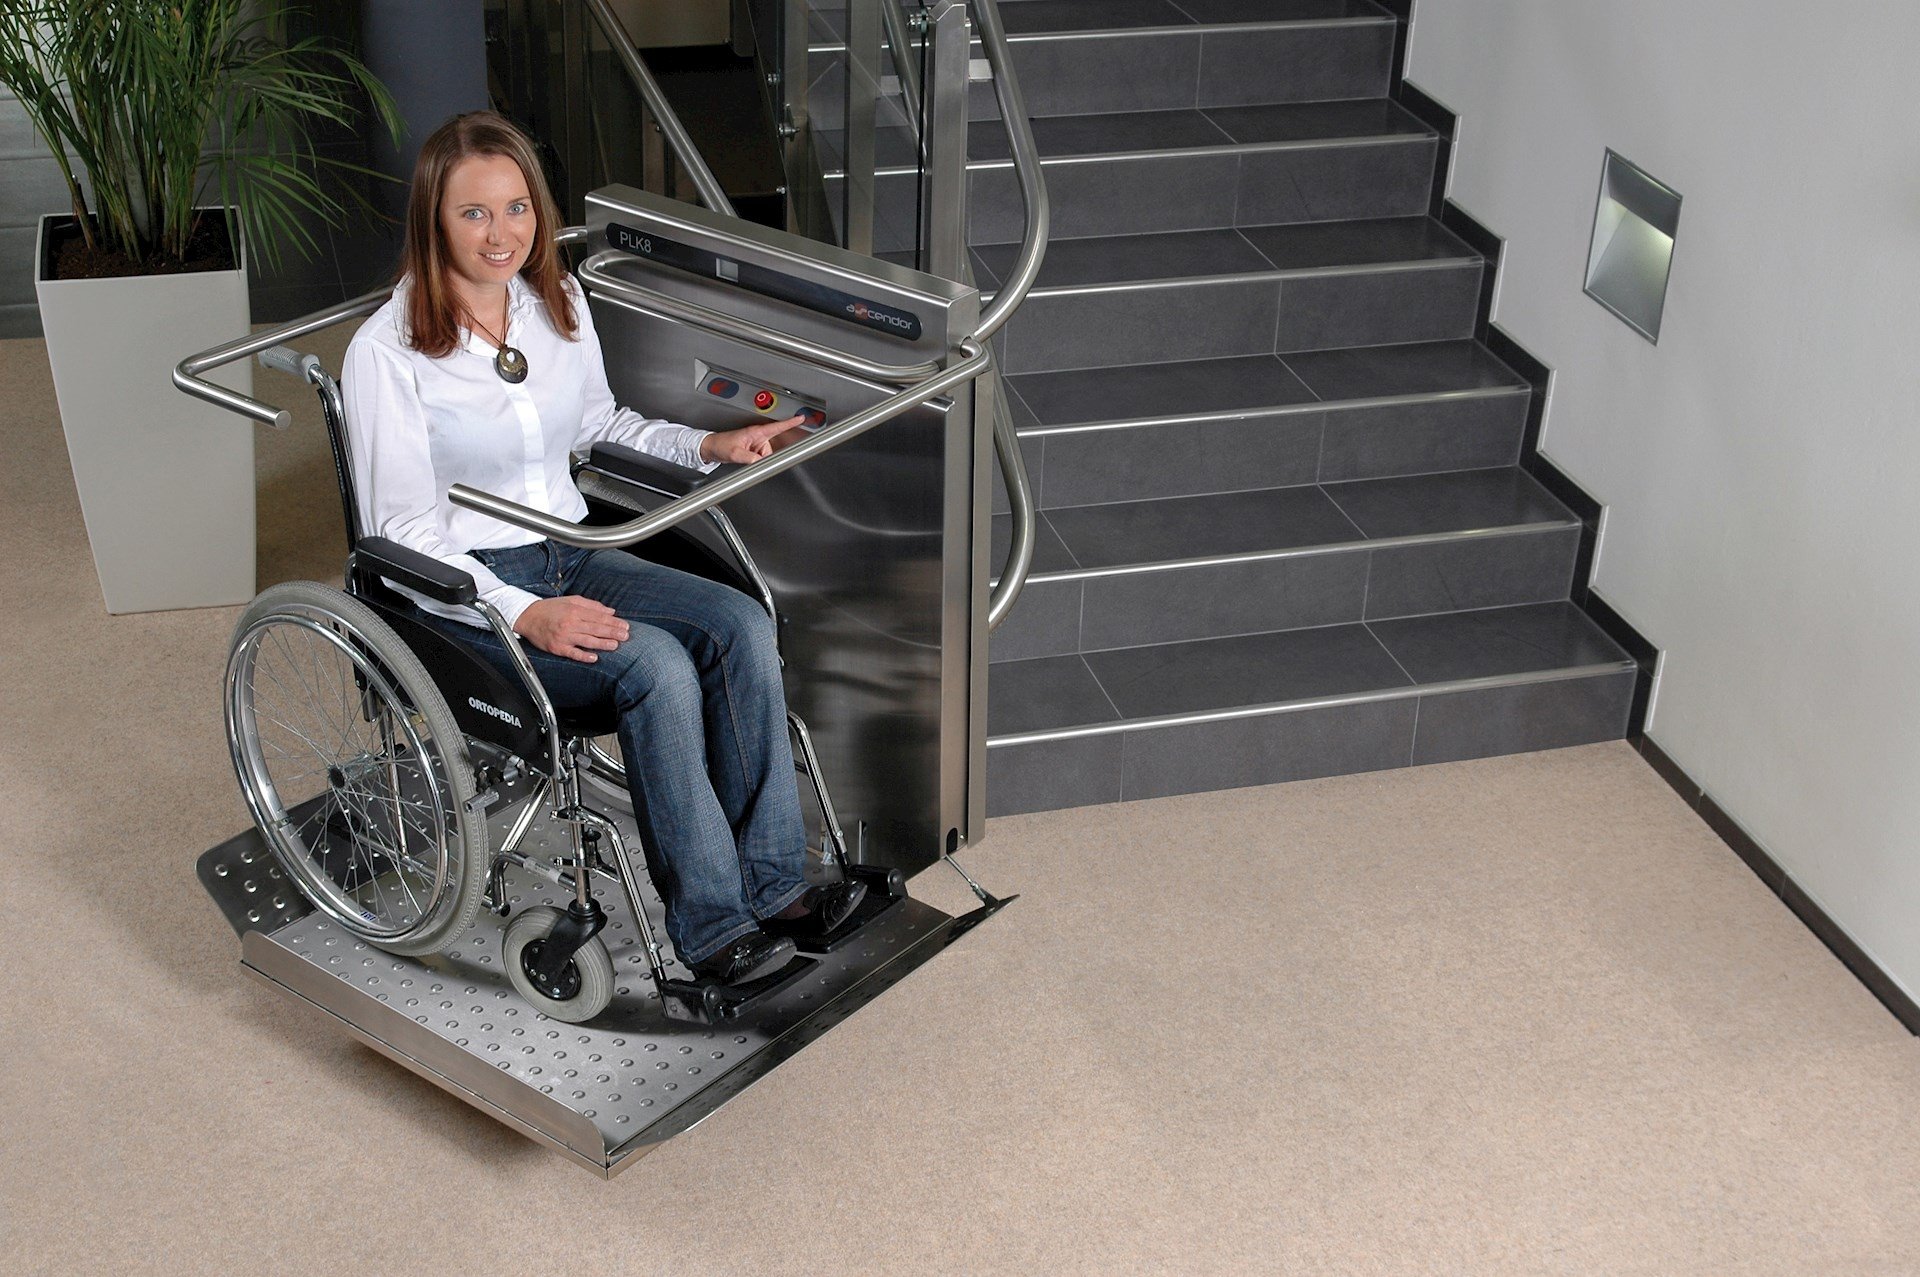 Транспортная доступность для инвалидов. ИНВАПРОМ а310 подъемник для инвалидов. Подъемная платформа БК-320 для инвалидов. Наклонная платформа - подъемник для инвалидов НПУ-001. Вертикальная платформа-подъемник для инвалидов 1100x1250 Veara EASYLIFT.